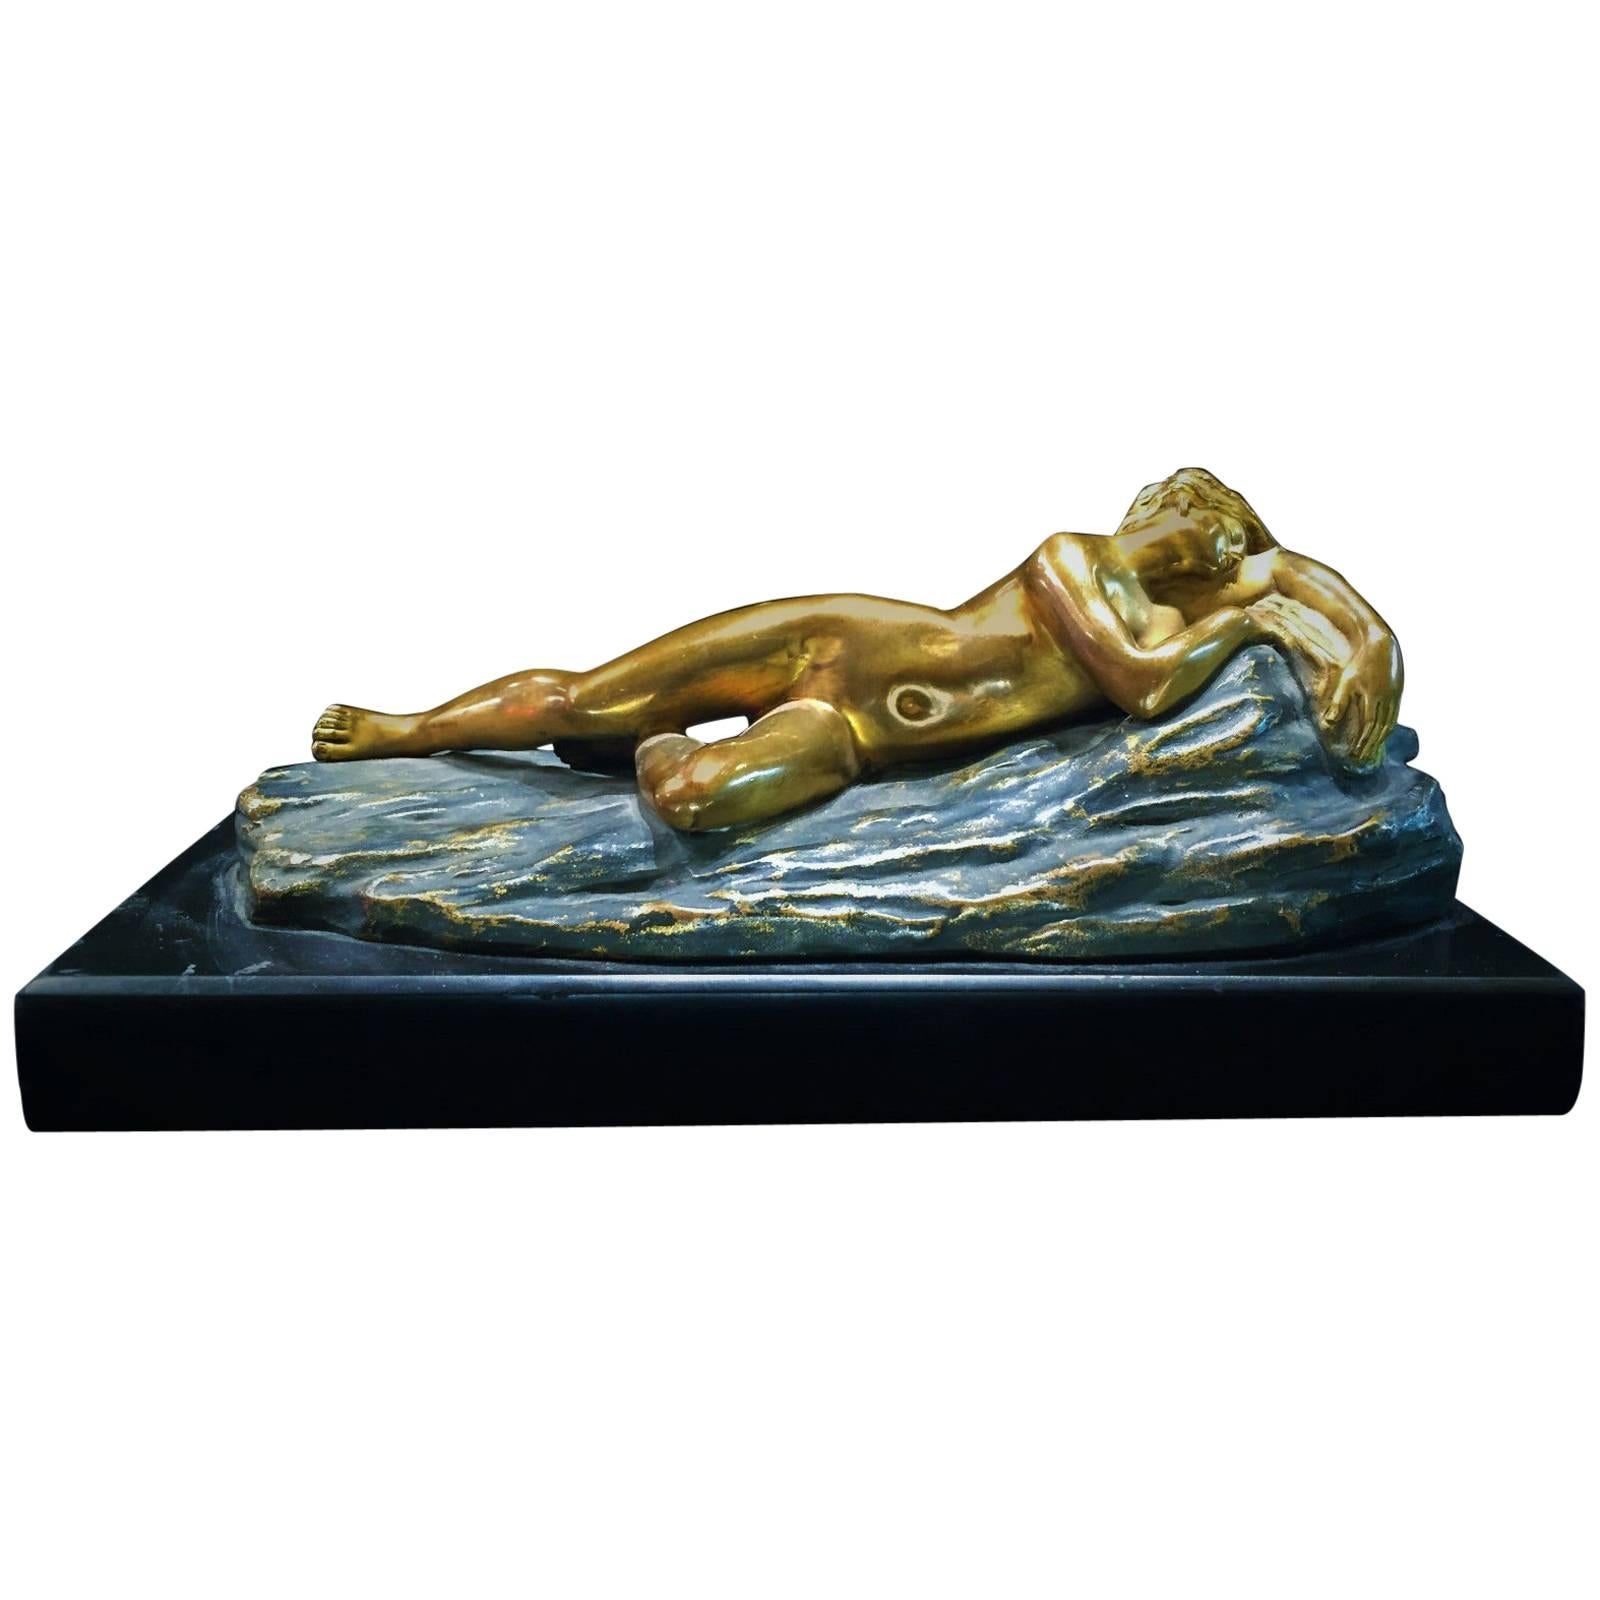 Presse-papiers sculptural Art Déco en bronze et marbre Opus-Cellini, vers 1930